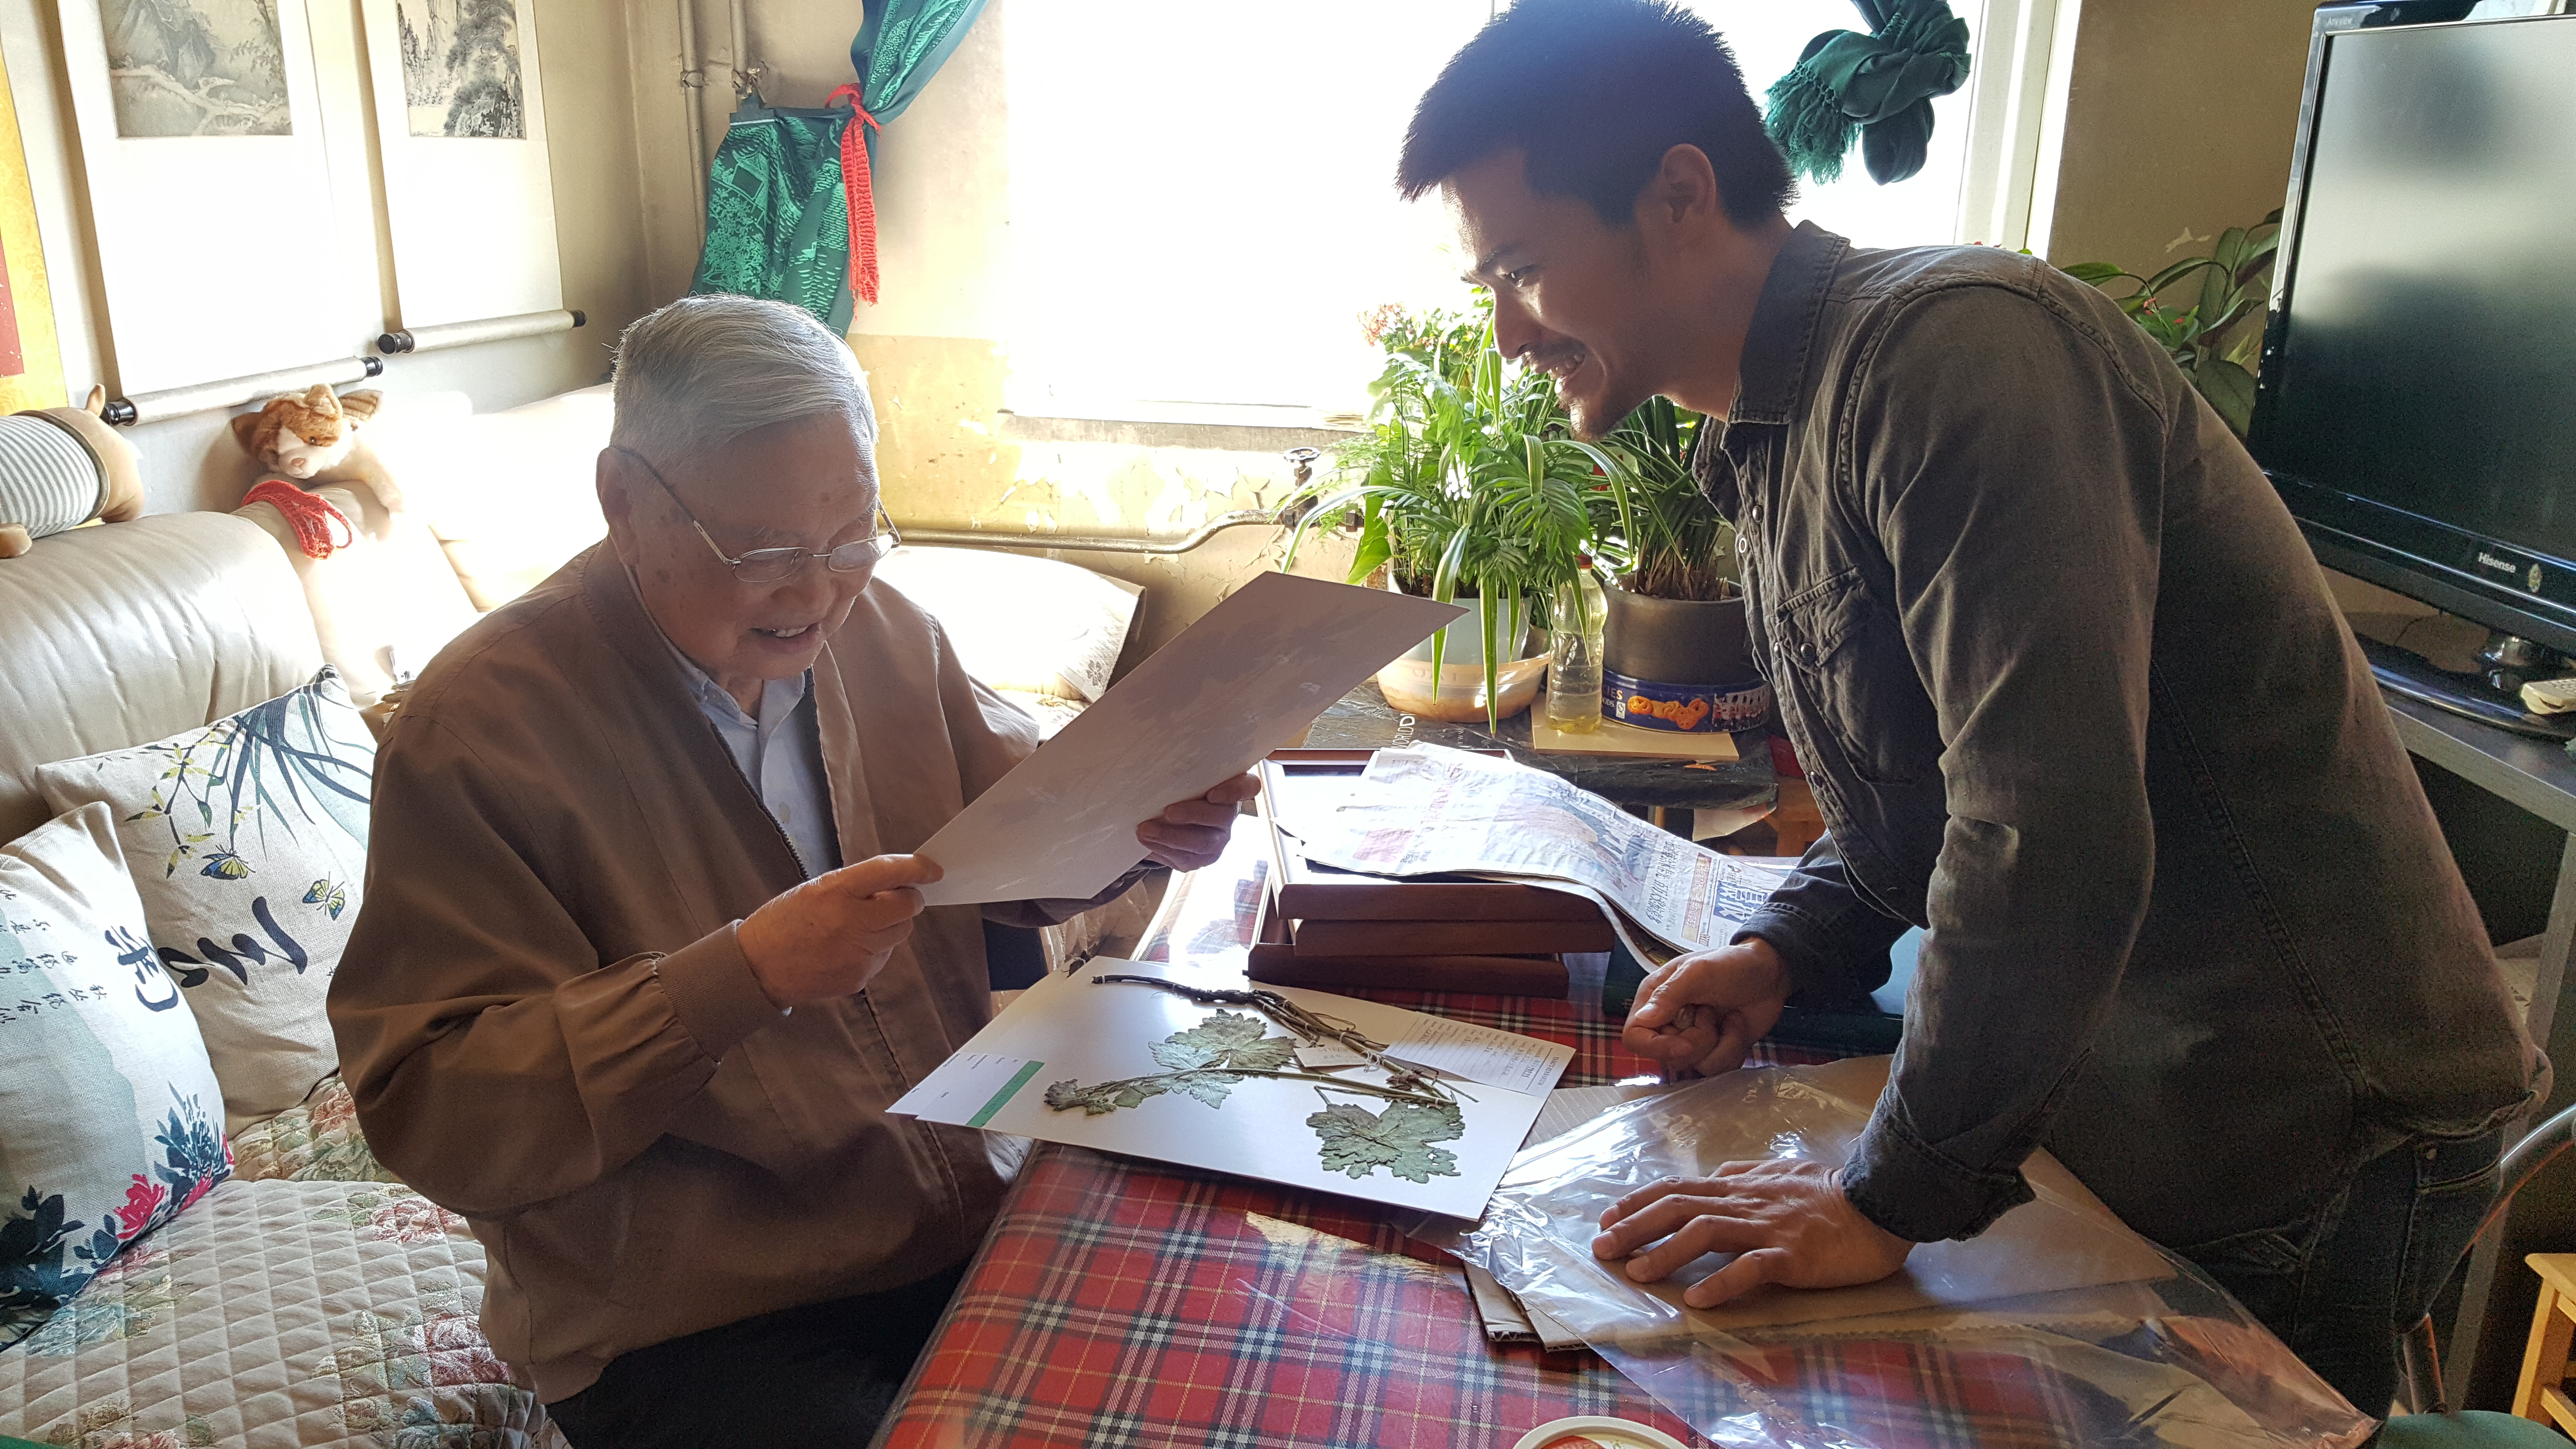 Yang Zongzong shows his plant specimens to Wang Wencai at Wang's home, Beijing, China, October 6, 2018. /courtesy of Yang Zongzong